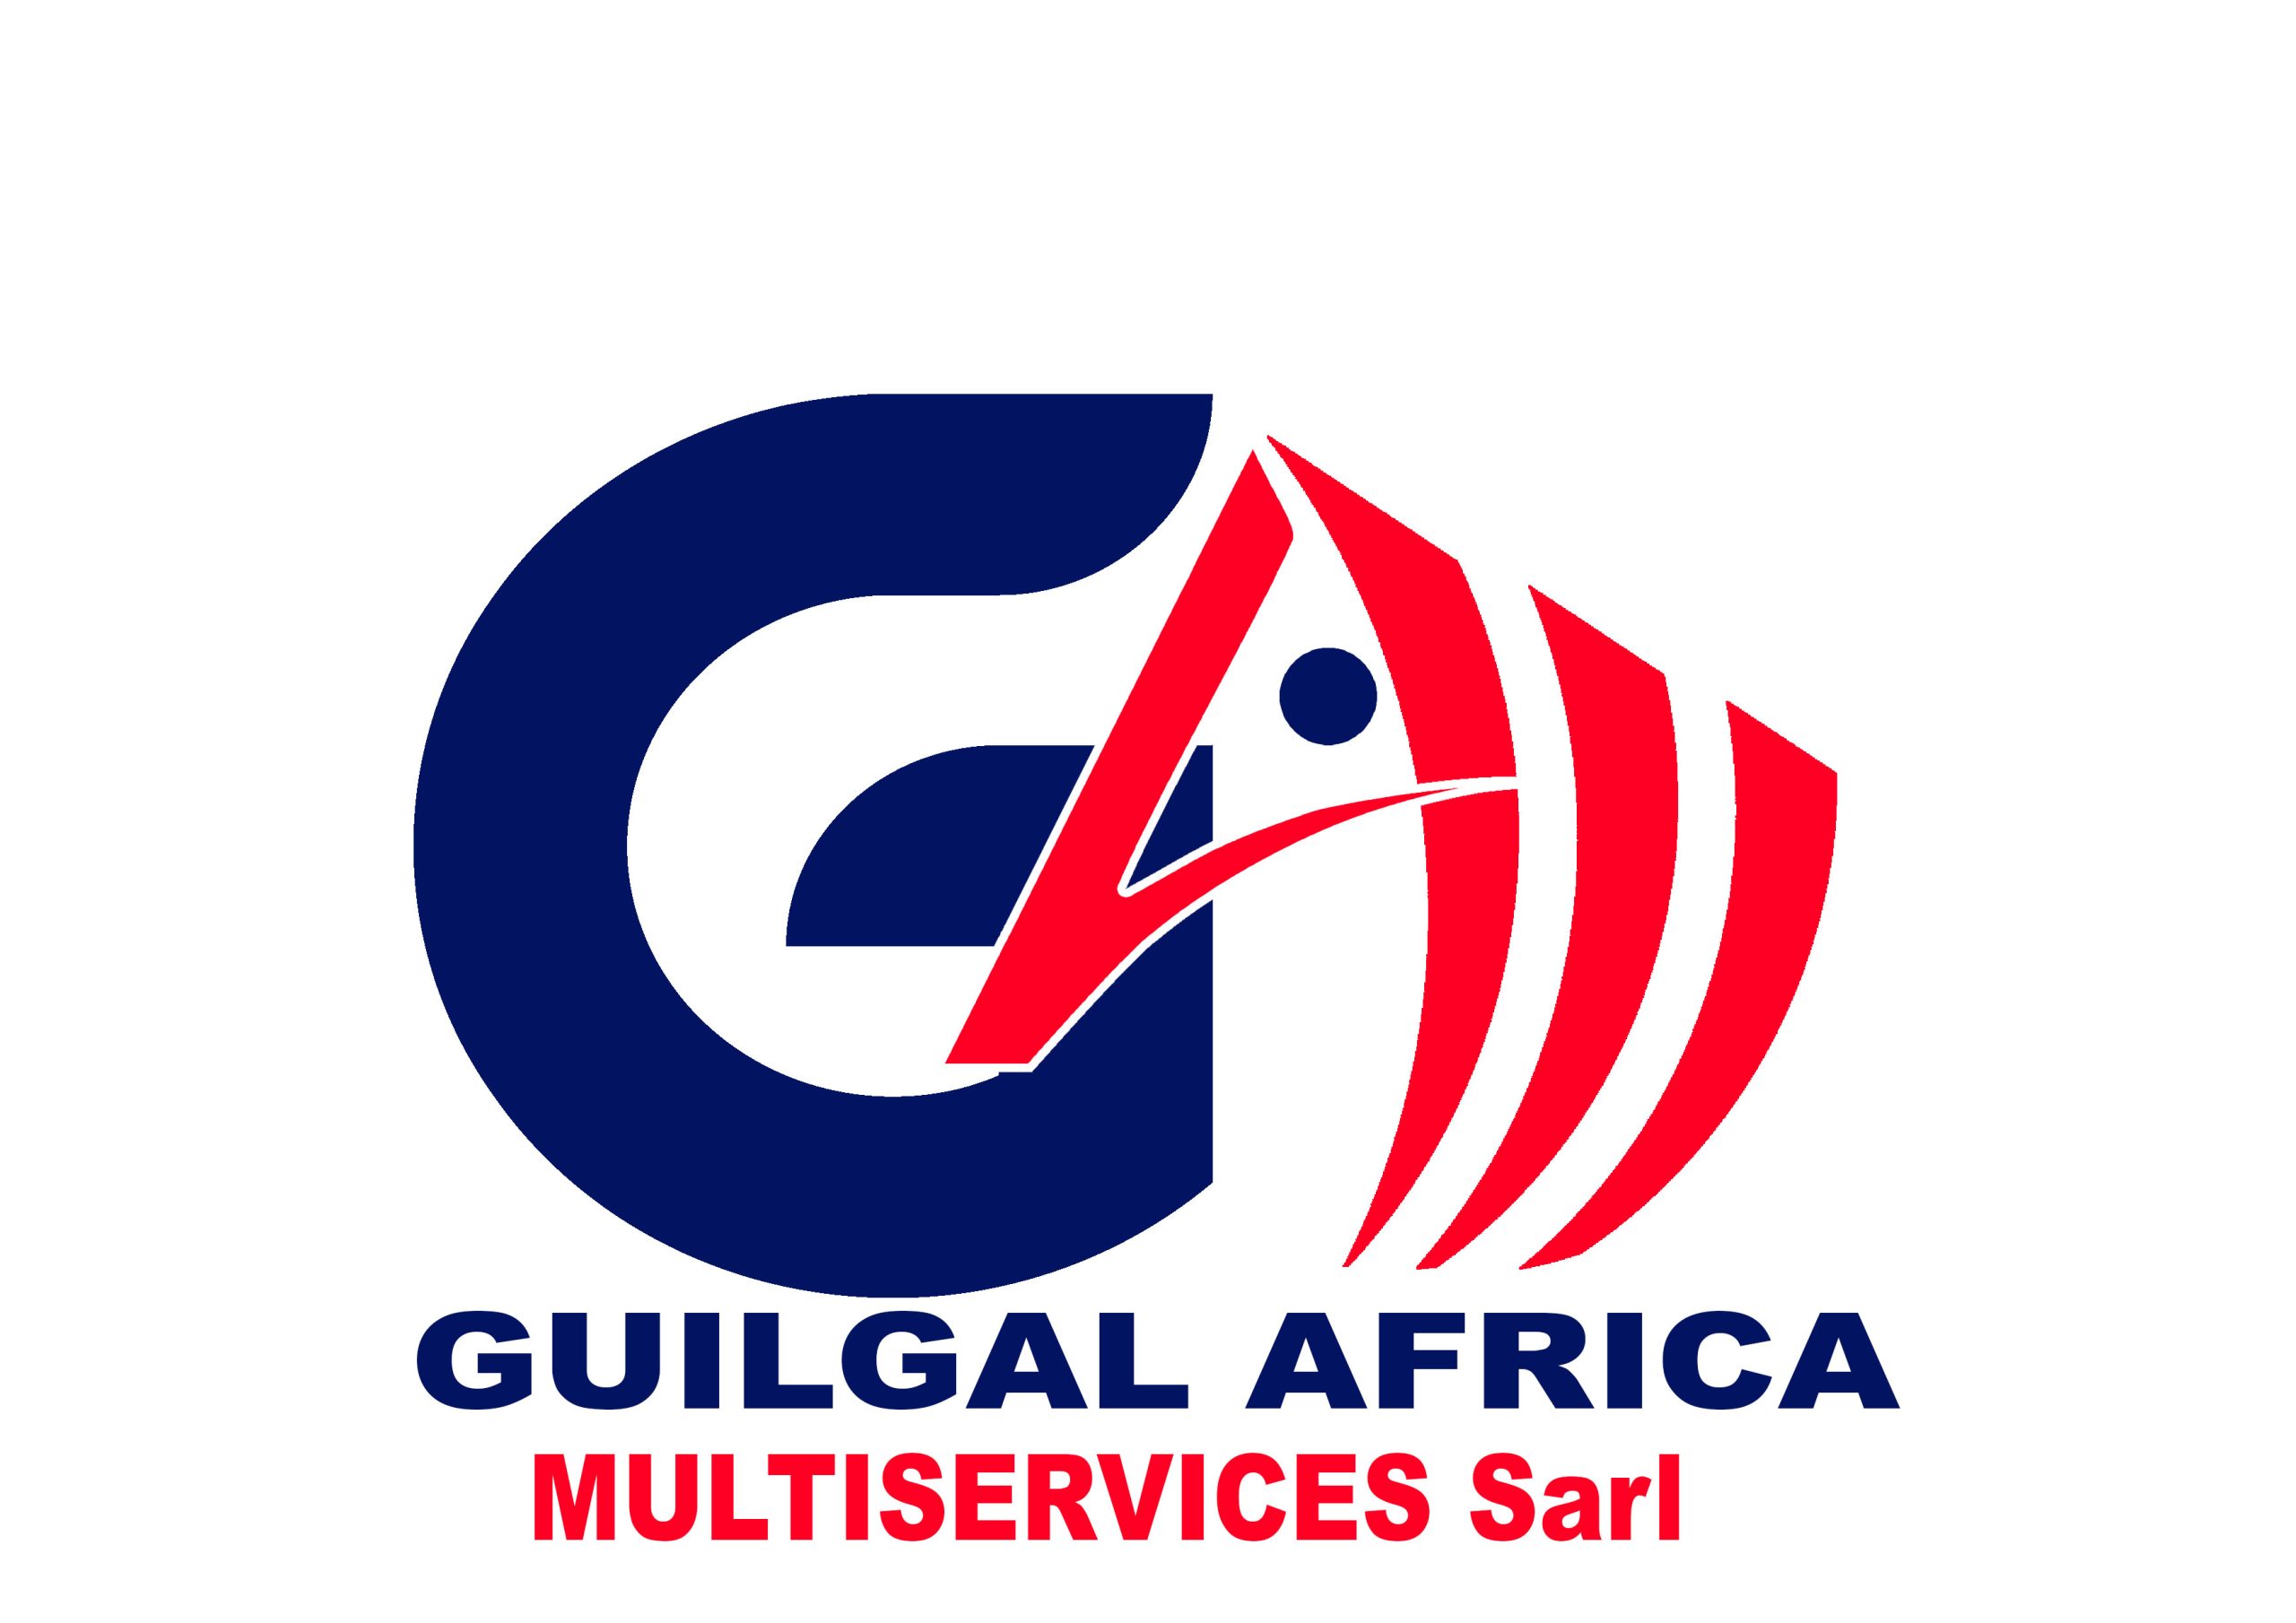 CRÉATION DU SITE WEB de Guilgal Africa Multiservices sarl